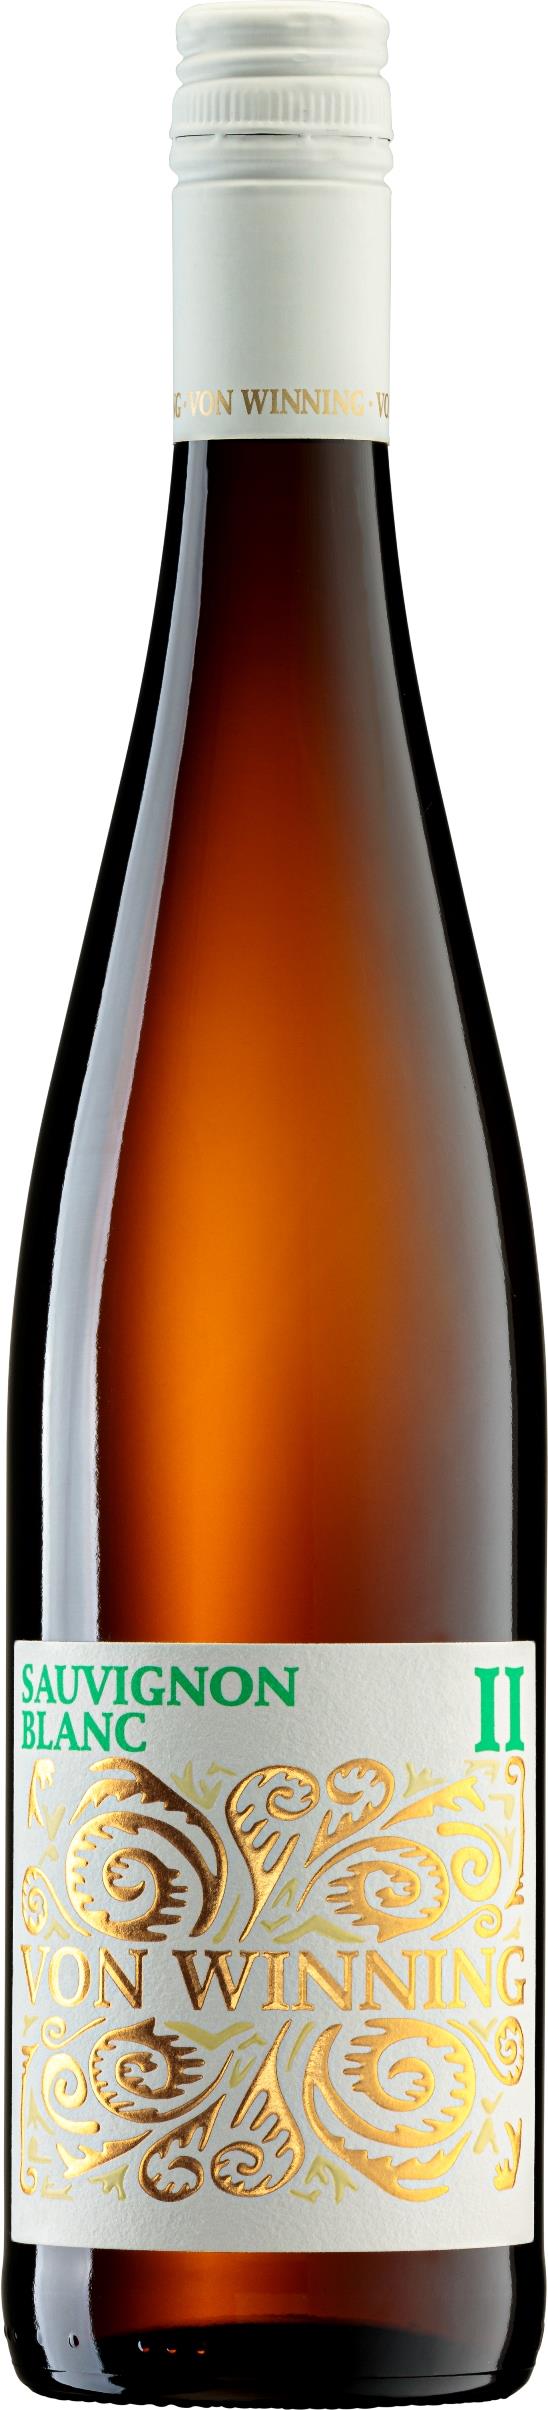 2023 Sauvignon Blanc II von Weingut von Winning